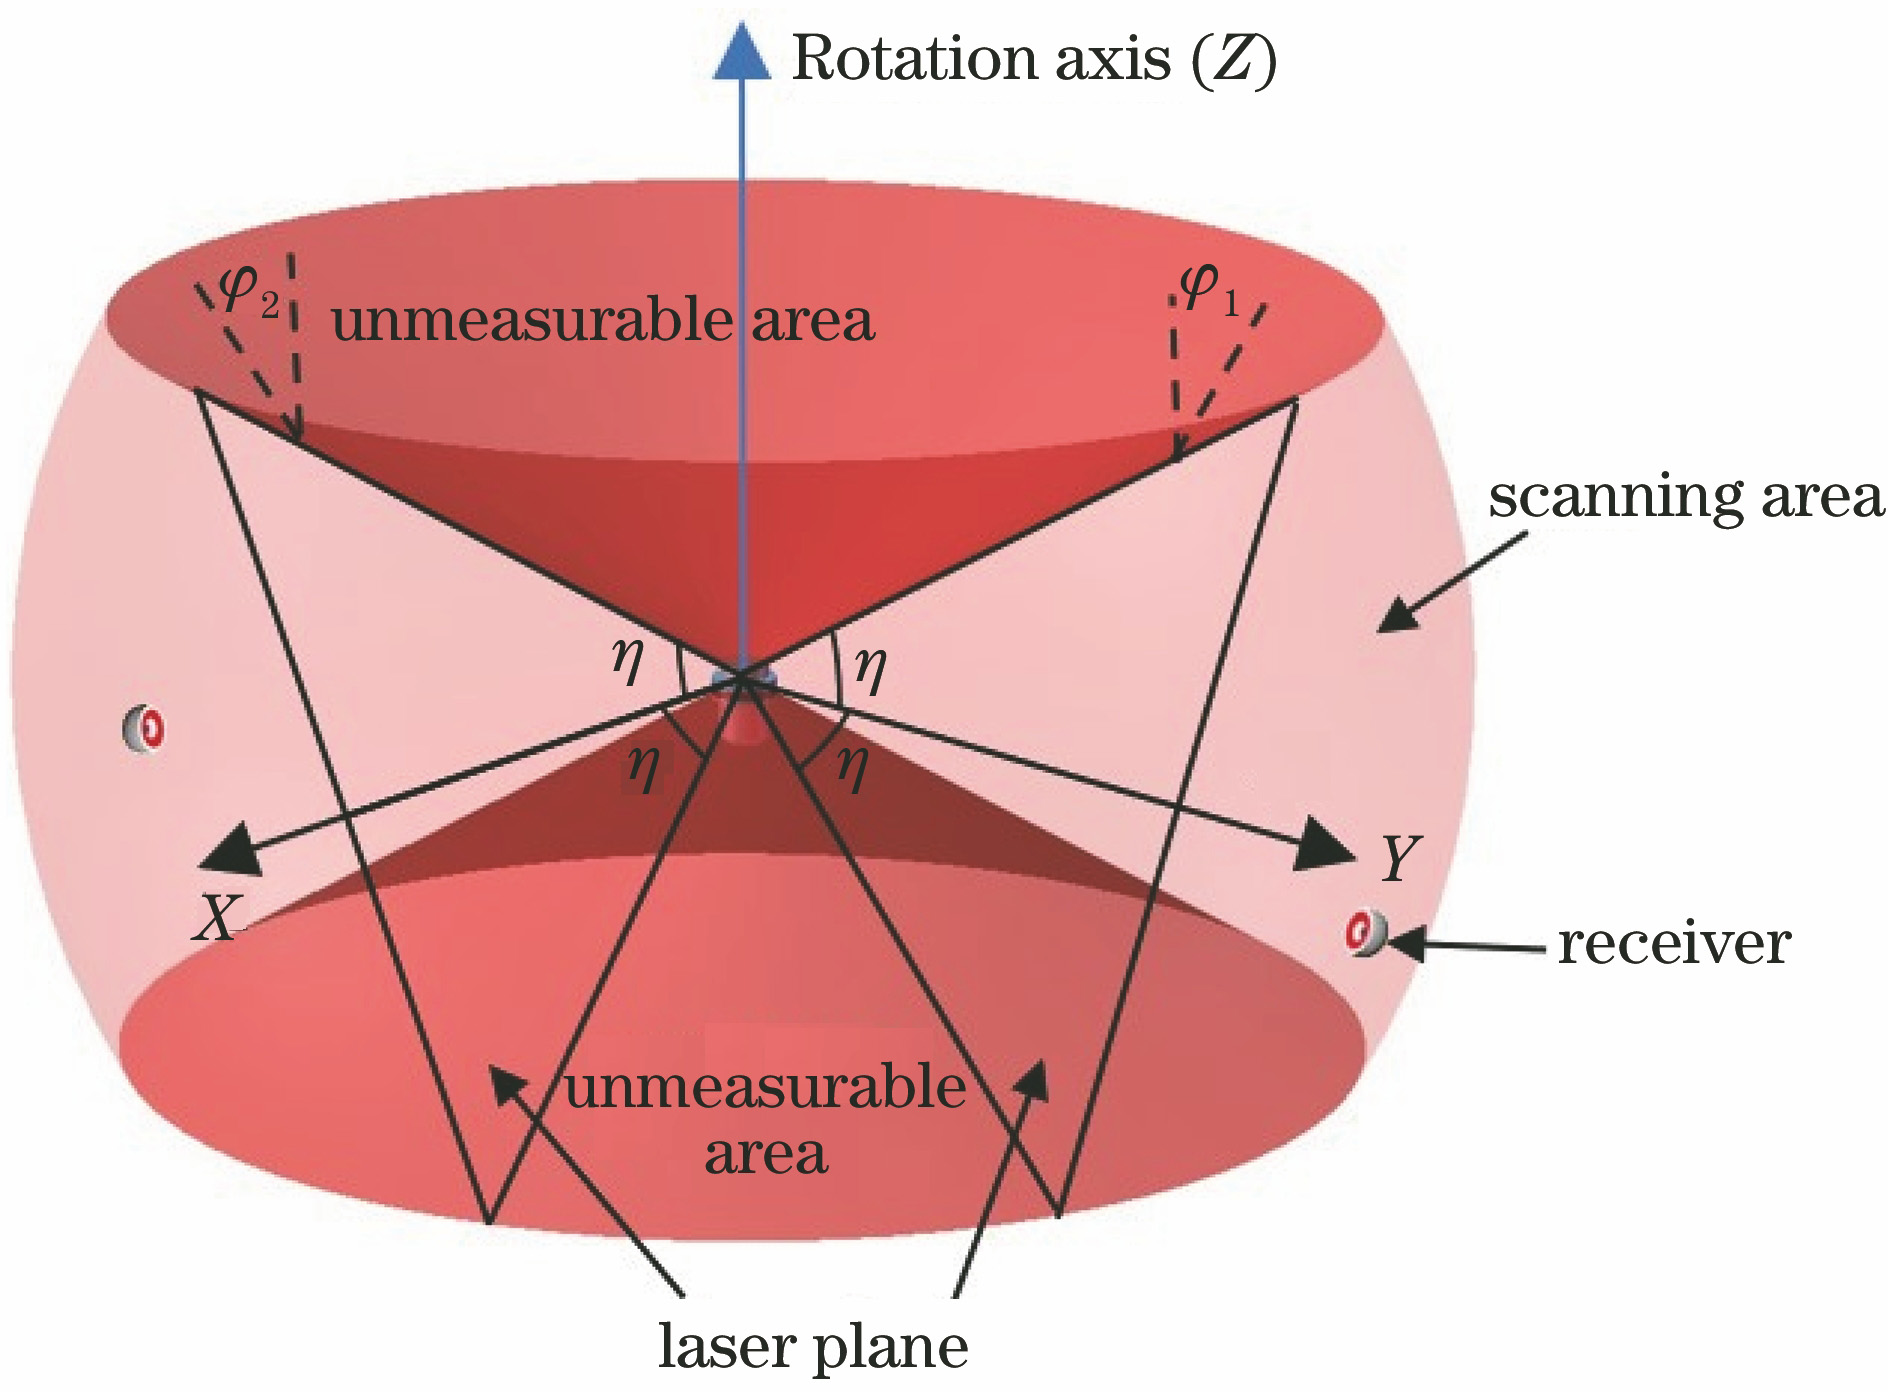 Effective scanning area of transmission node